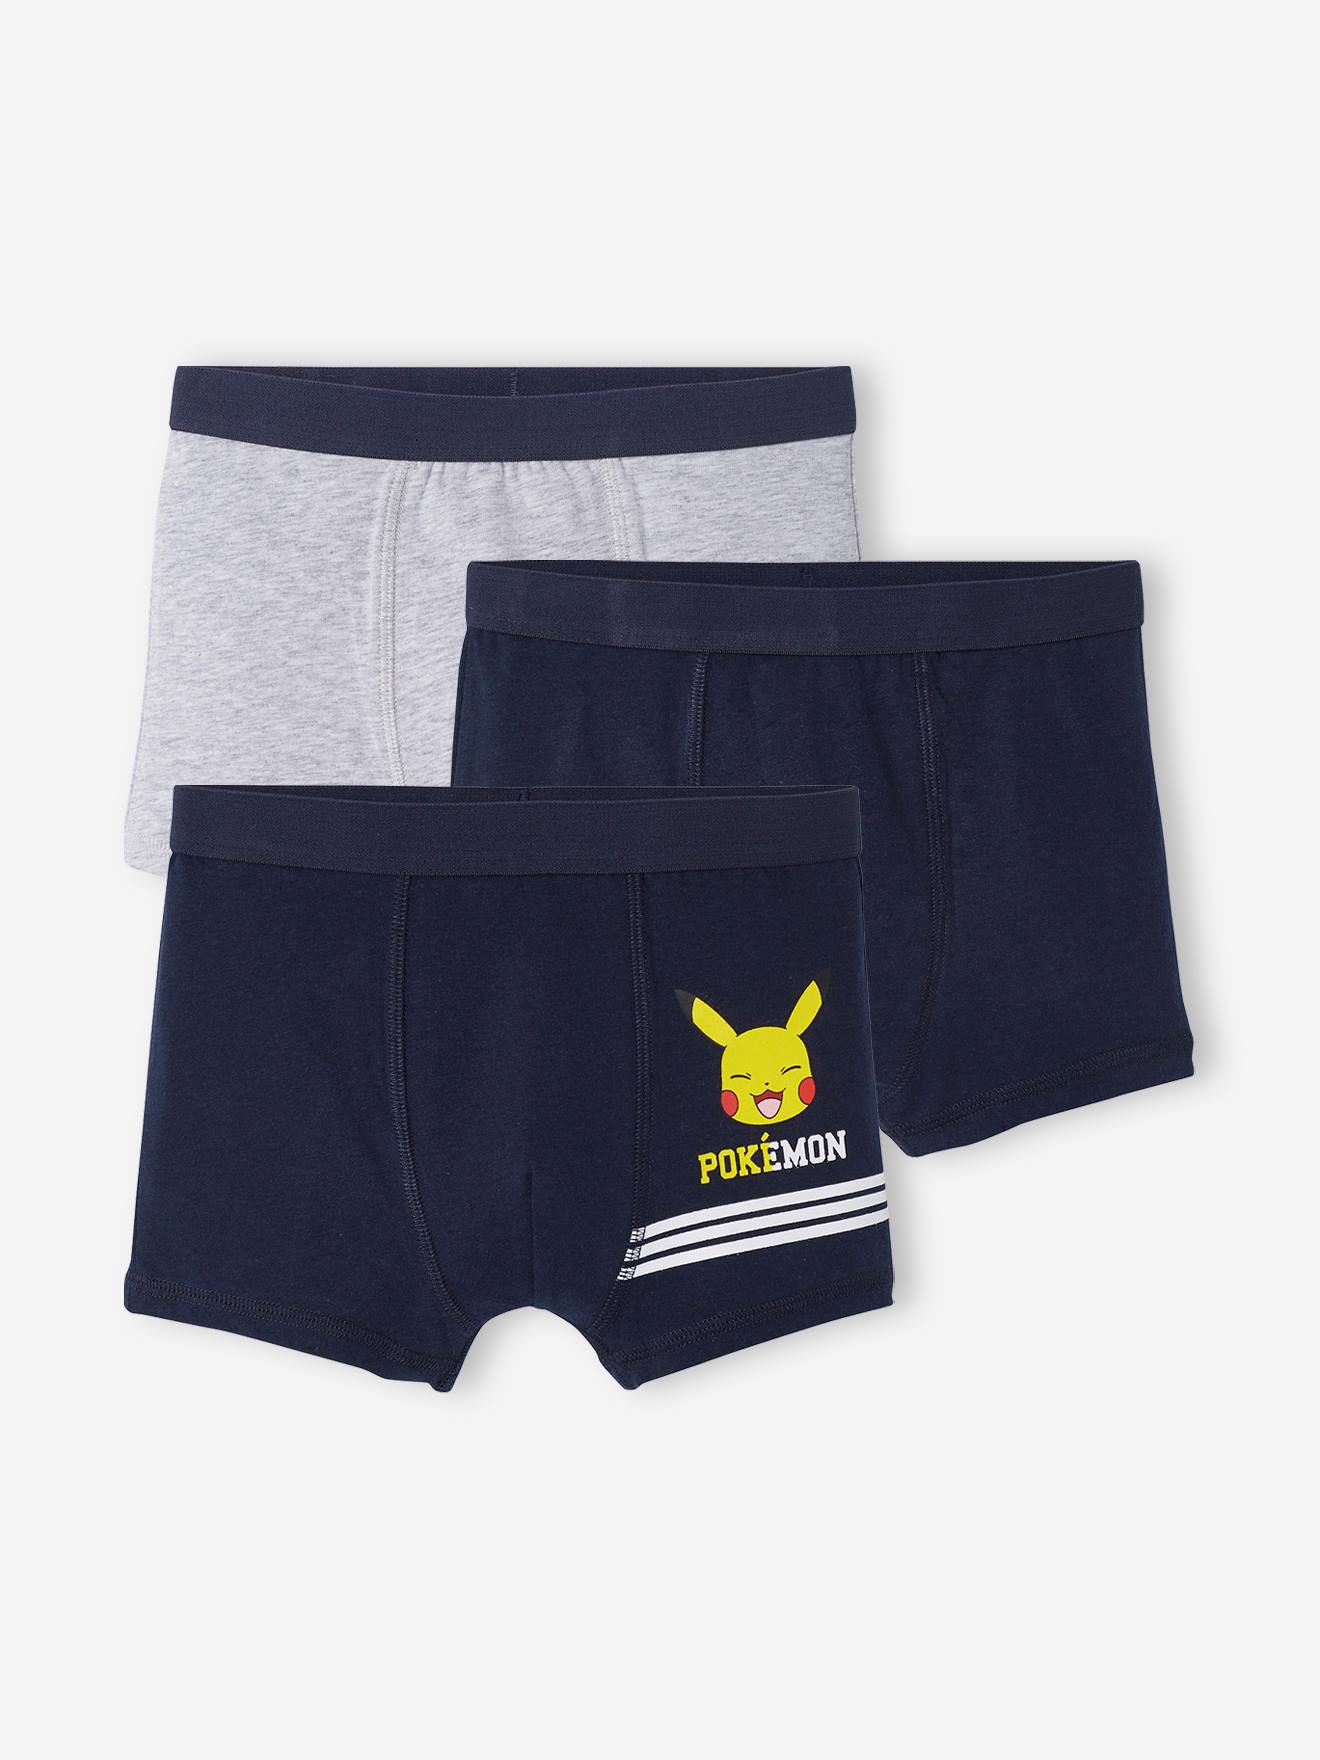 Set van 3 Pokémon® boxers marineblauw, grijs gechineerd